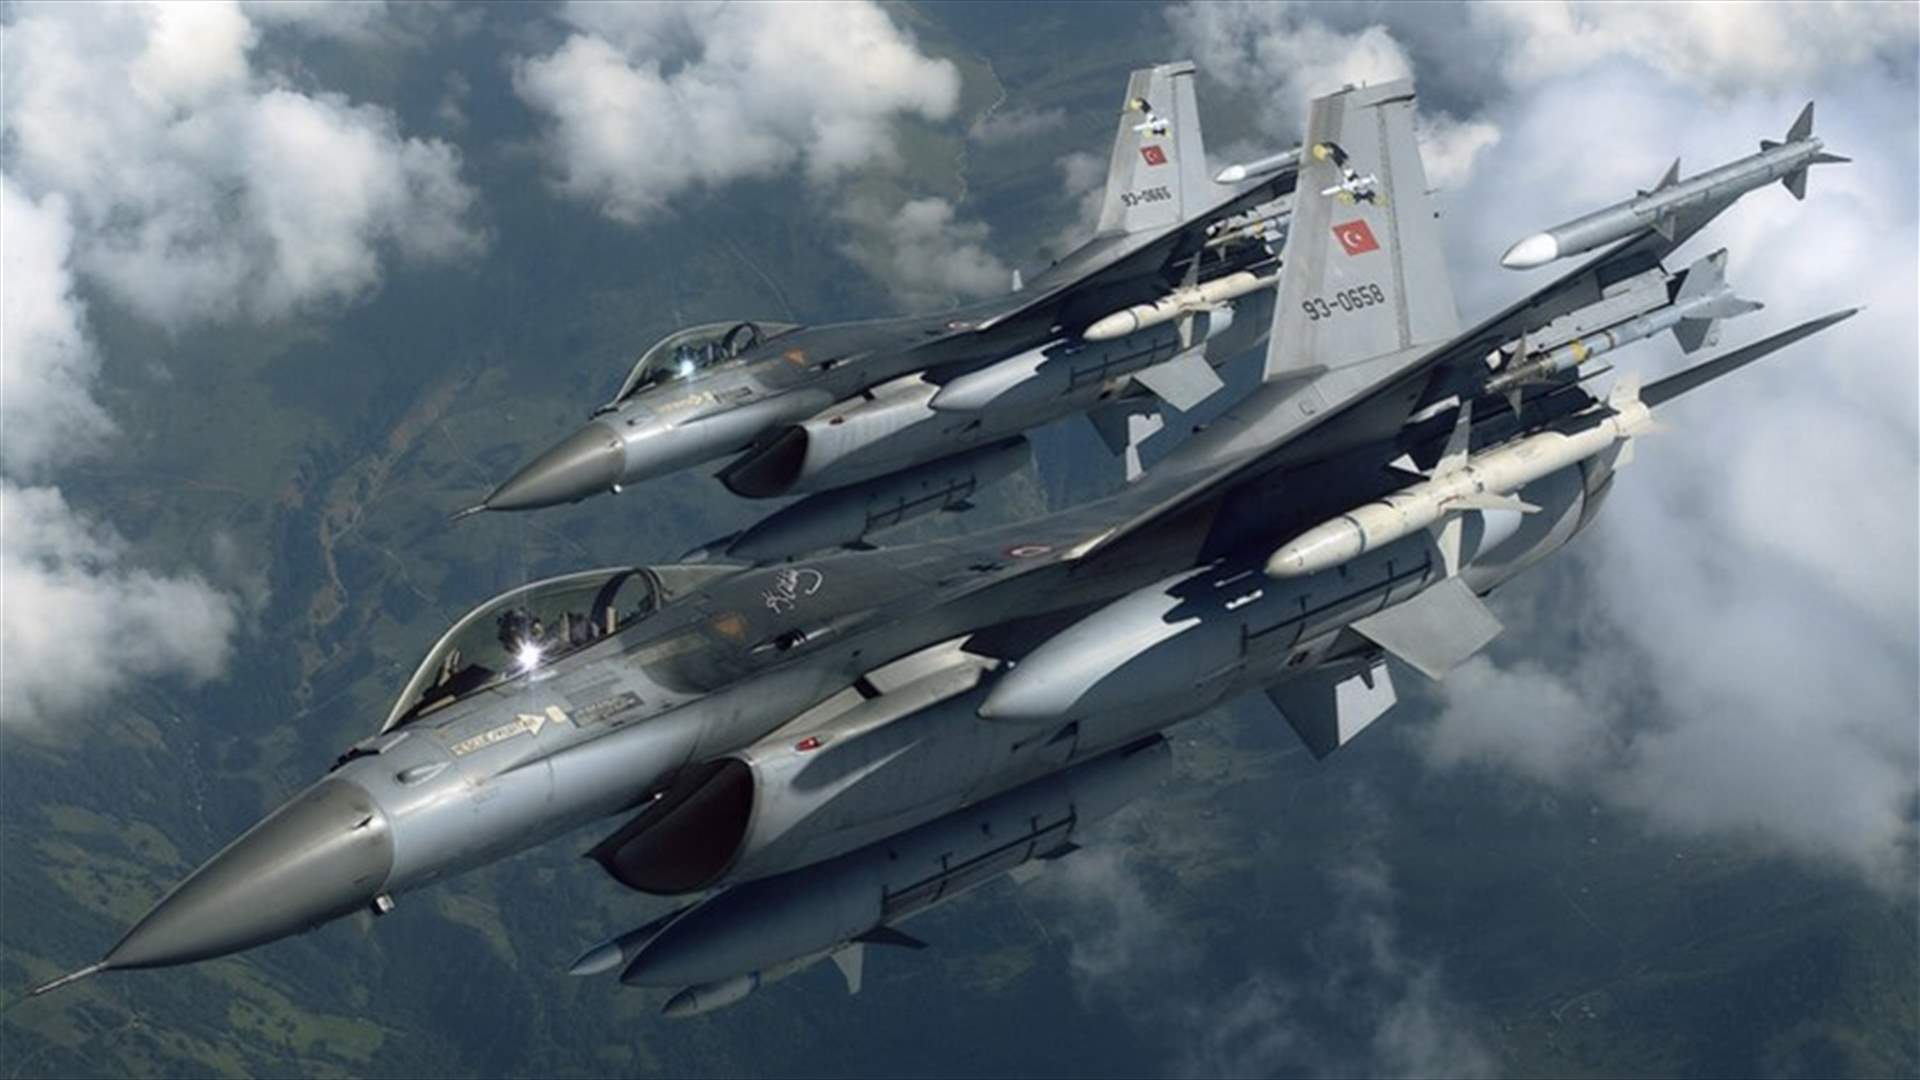 Turkish warplanes attack Kurdish militant targets in Iraq -sources